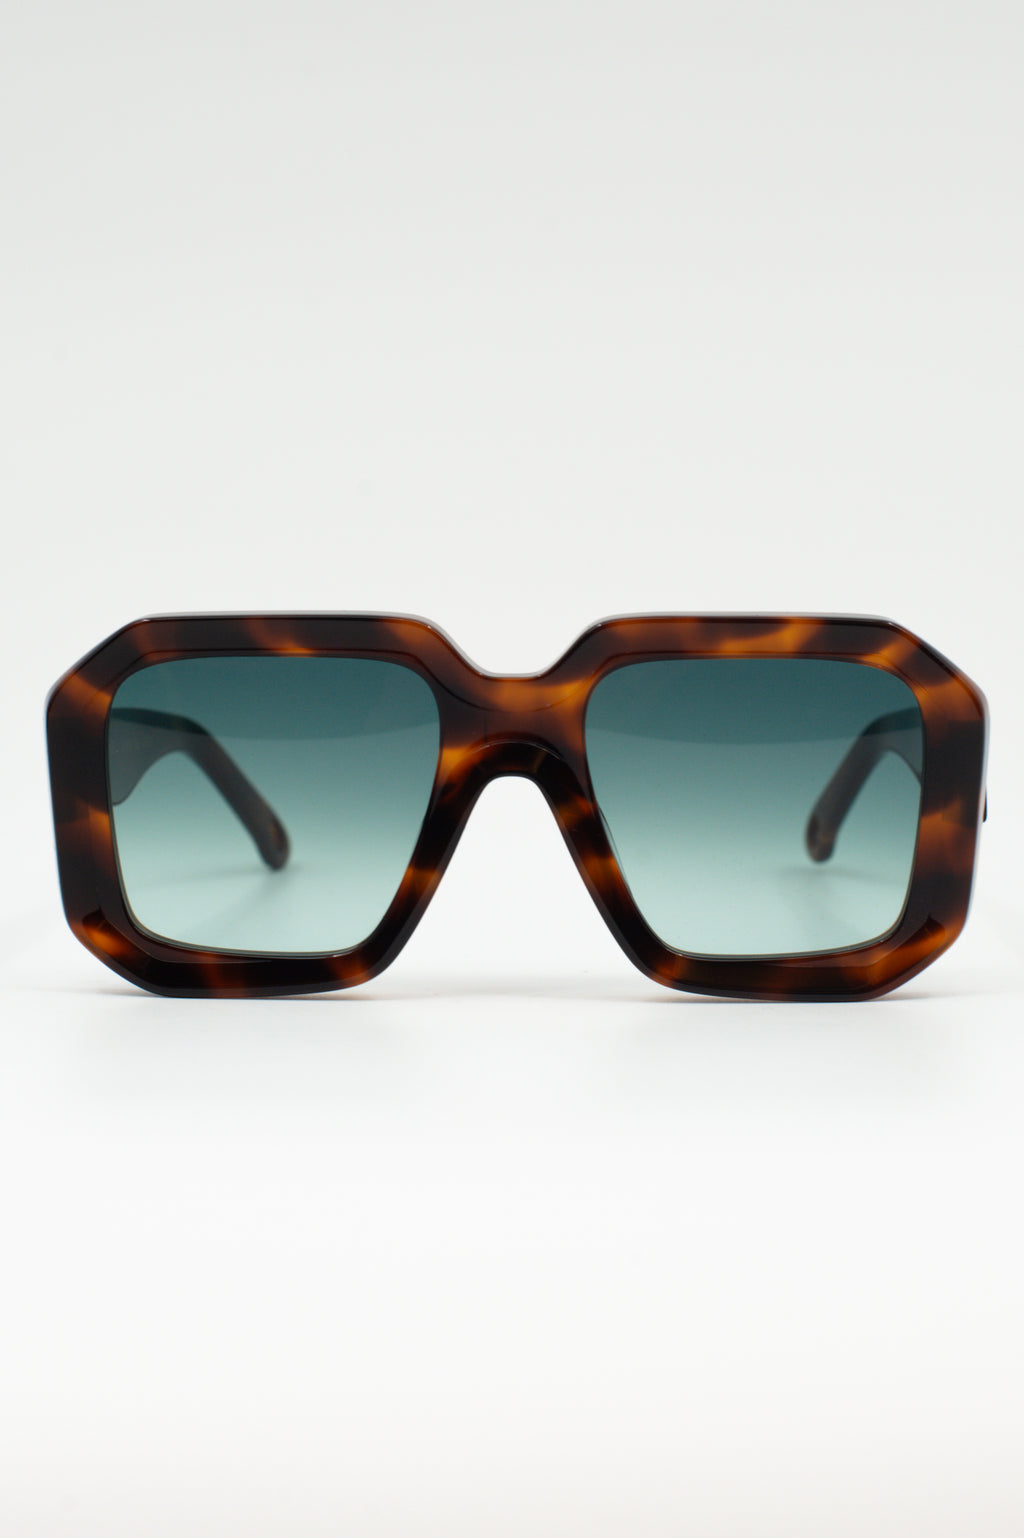 Onassis sunglasses  tortoise / bottle